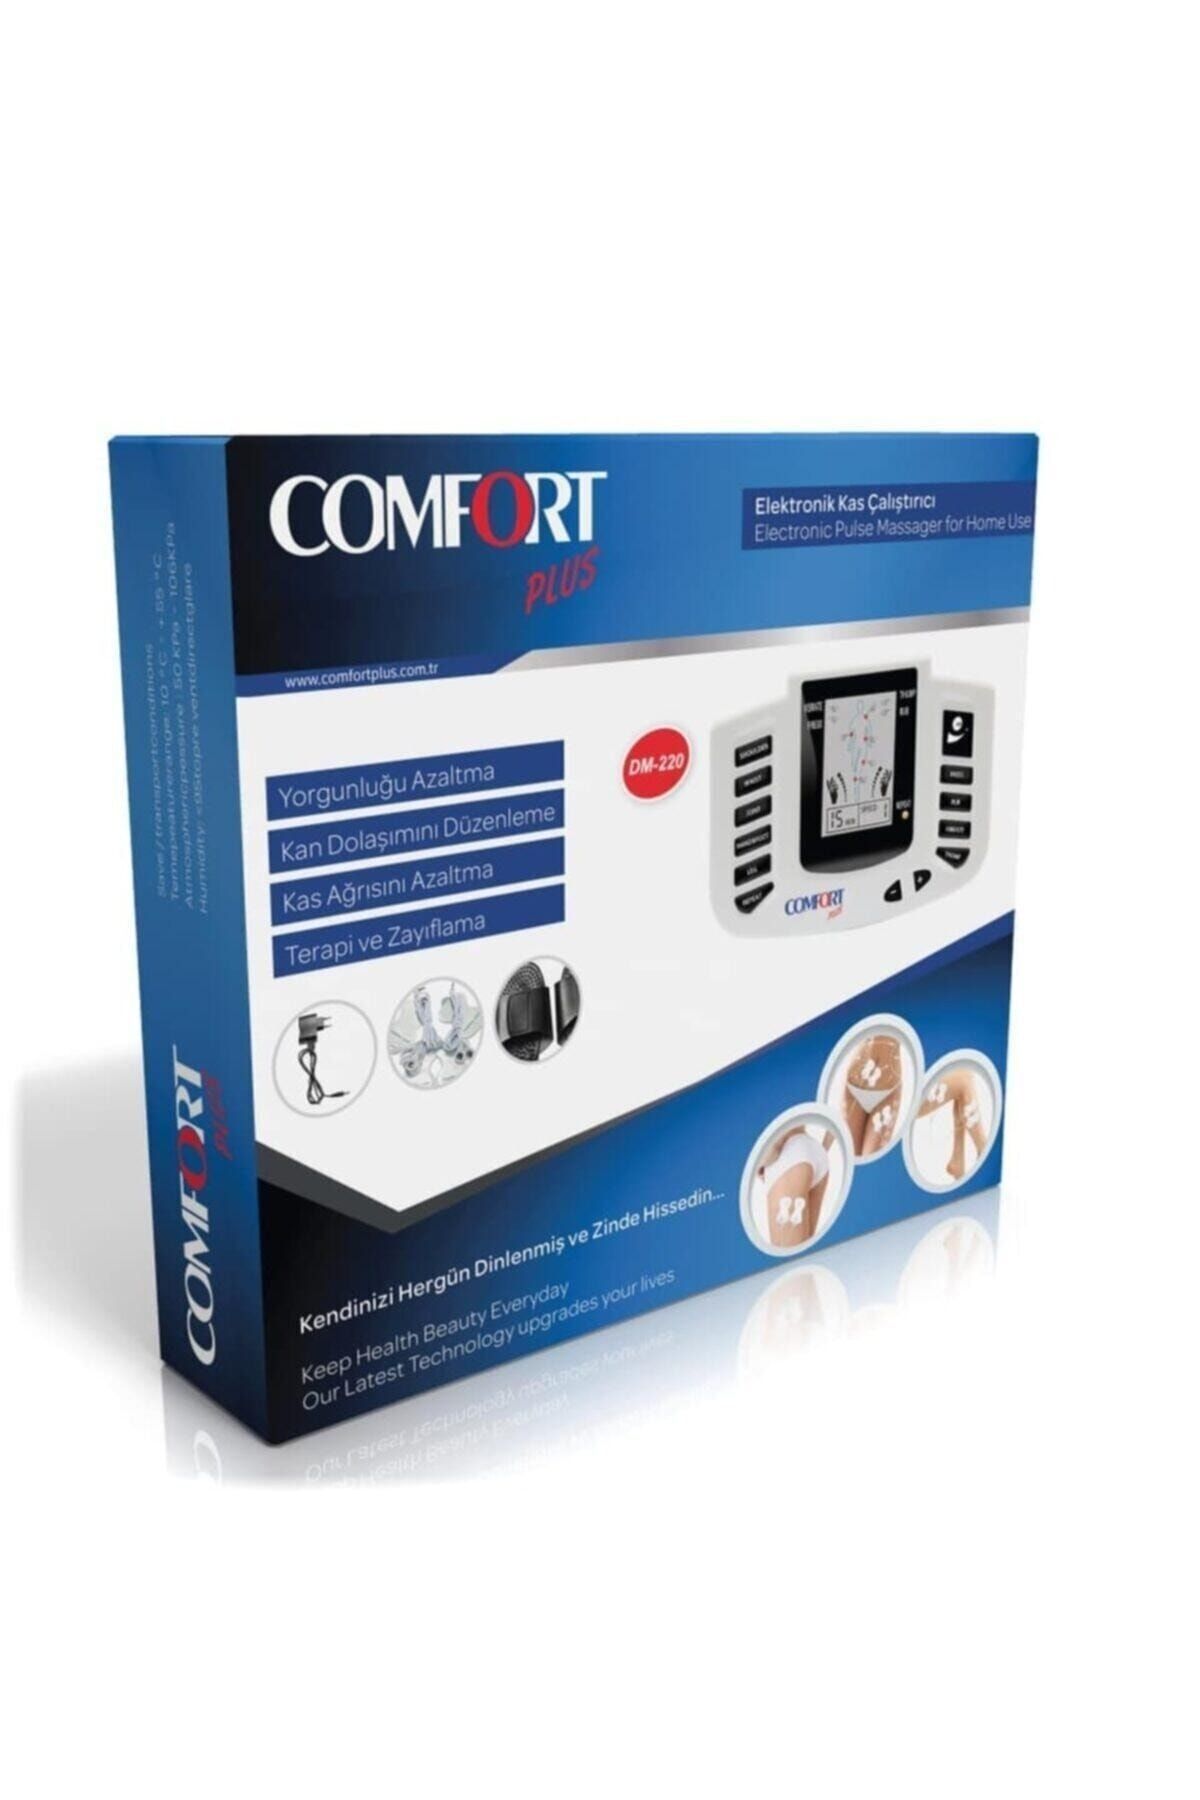 Comfort Plus Dm-2100 Terlikli Elektronik Kas Çalıştırıcı Tens Terapi Cihazı